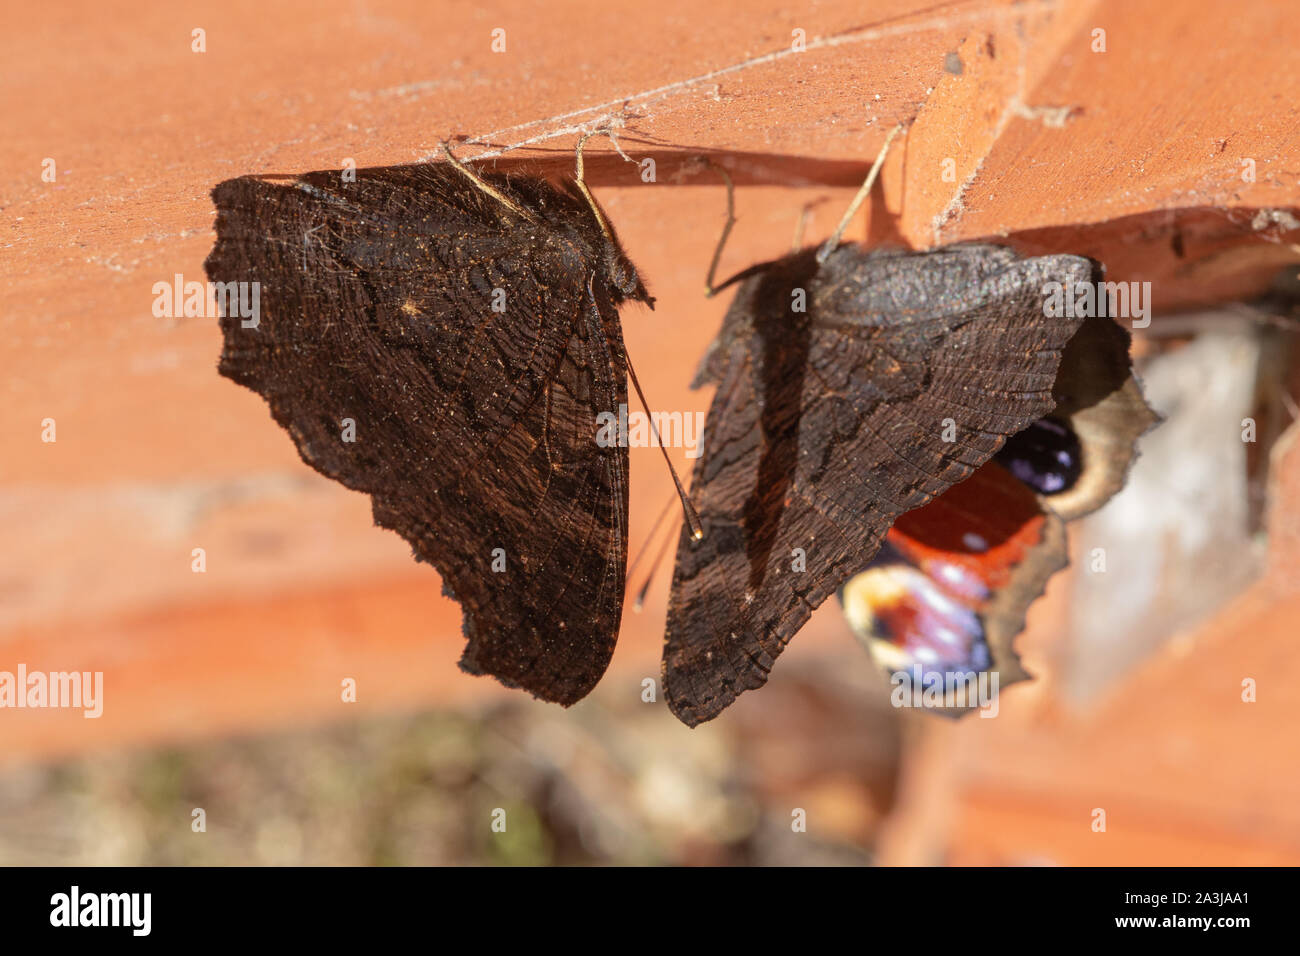 Peacock Schmetterlinge (Nymphalis io). Zwei Schmetterlinge, zu den Inneren, Unterseite klammert, dachfläche von Geflügel Nistkasten. Nacht oder Tag Zeit Zuflucht. Stockfoto